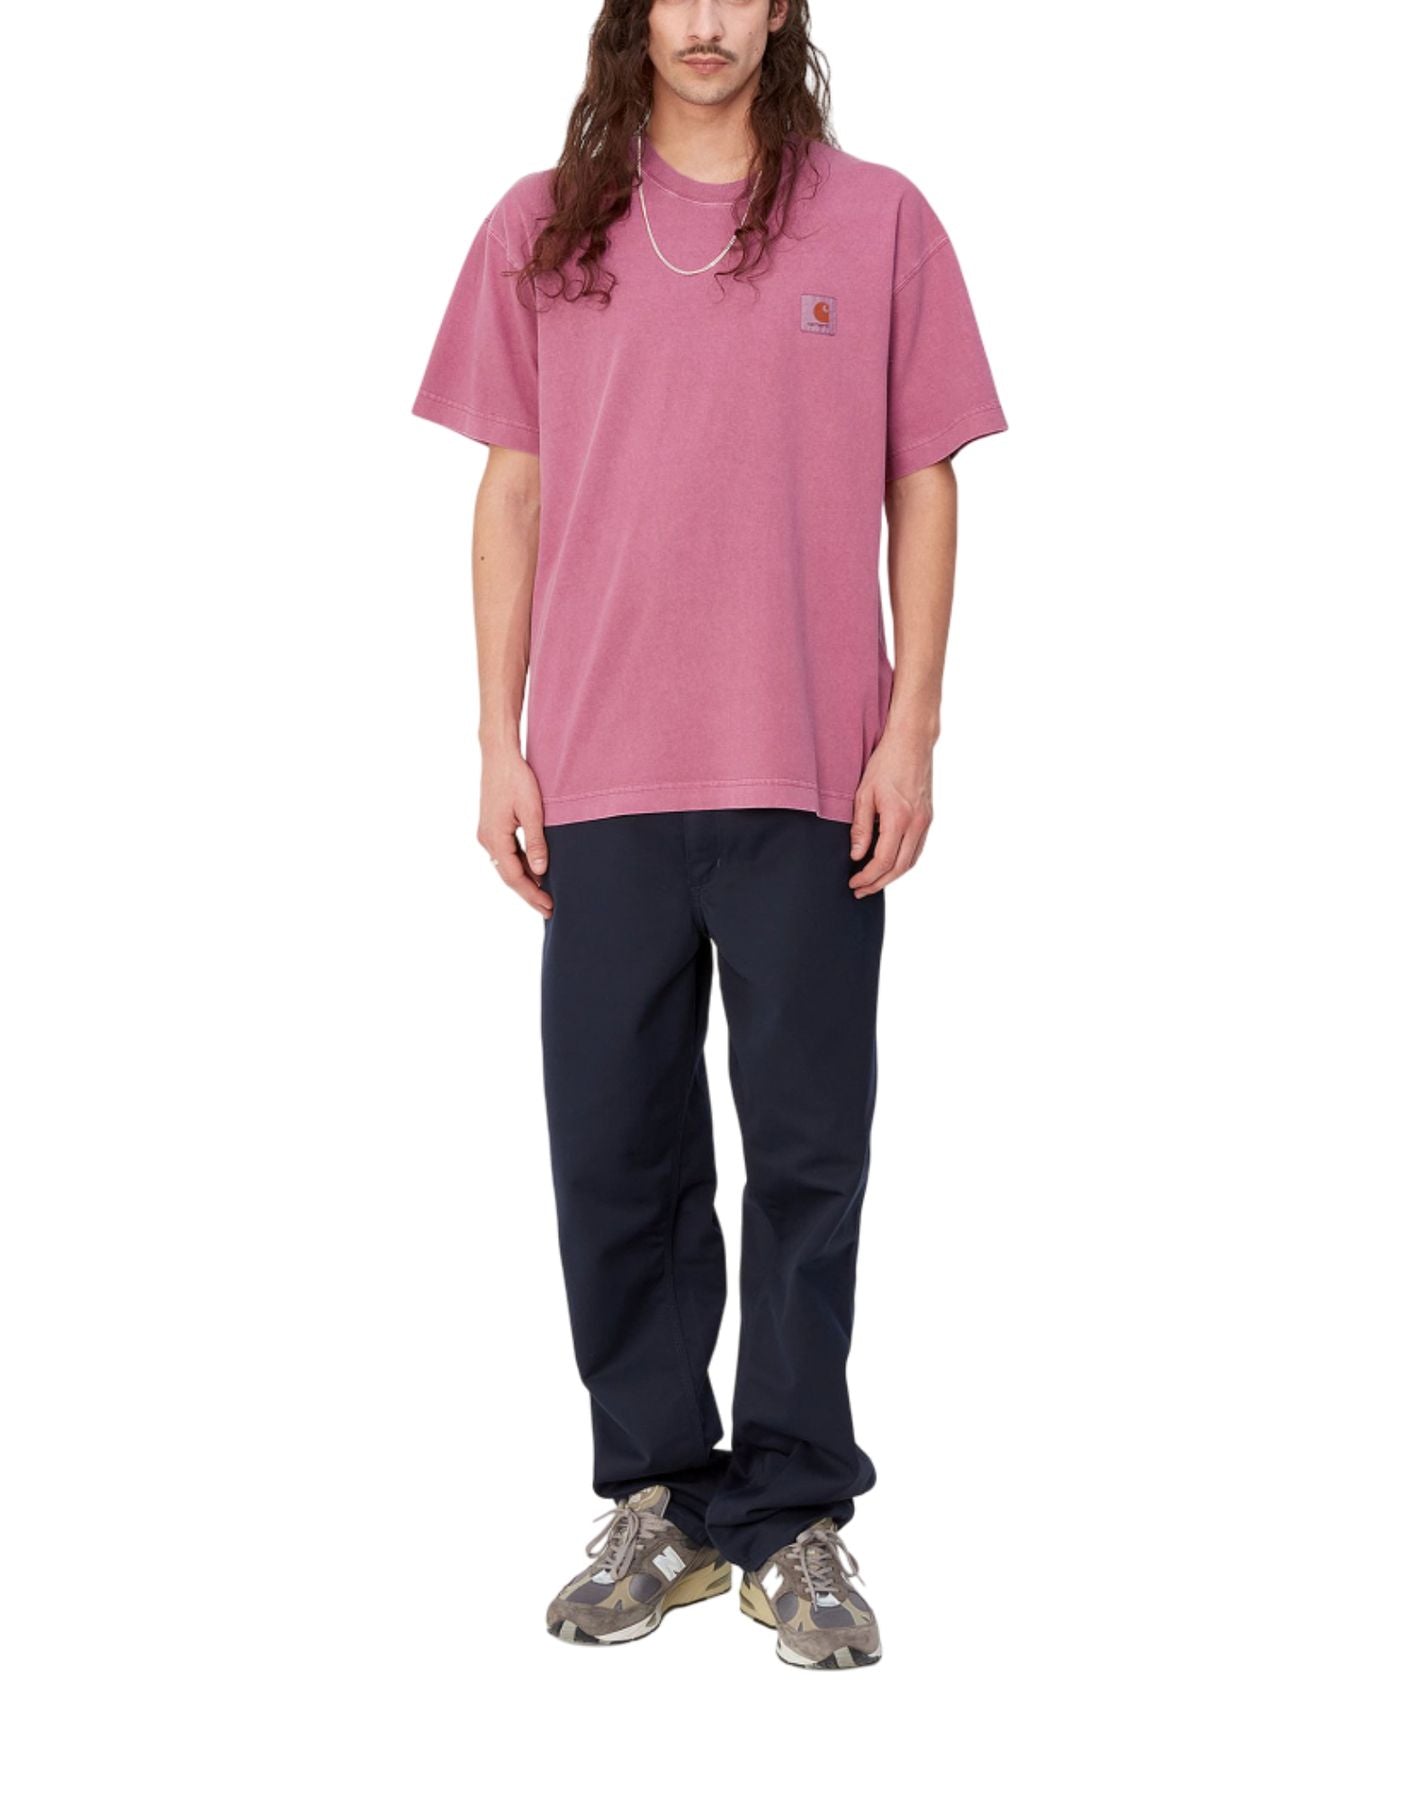 Camiseta para el hombre i029949 1yt.gd rosa CARHARTT WIP